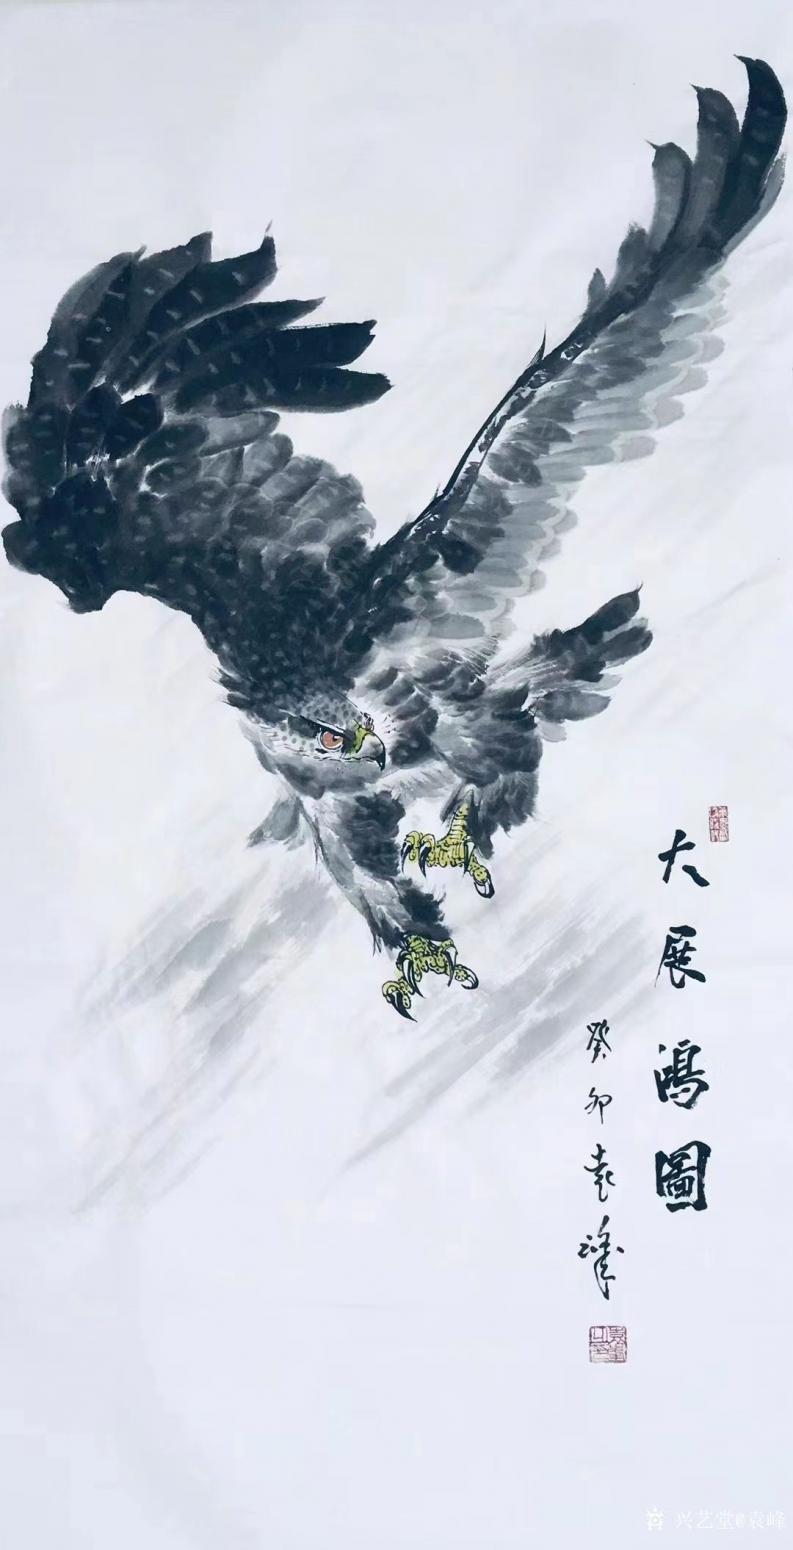 袁峰国画作品《鹰-大展鸿图》